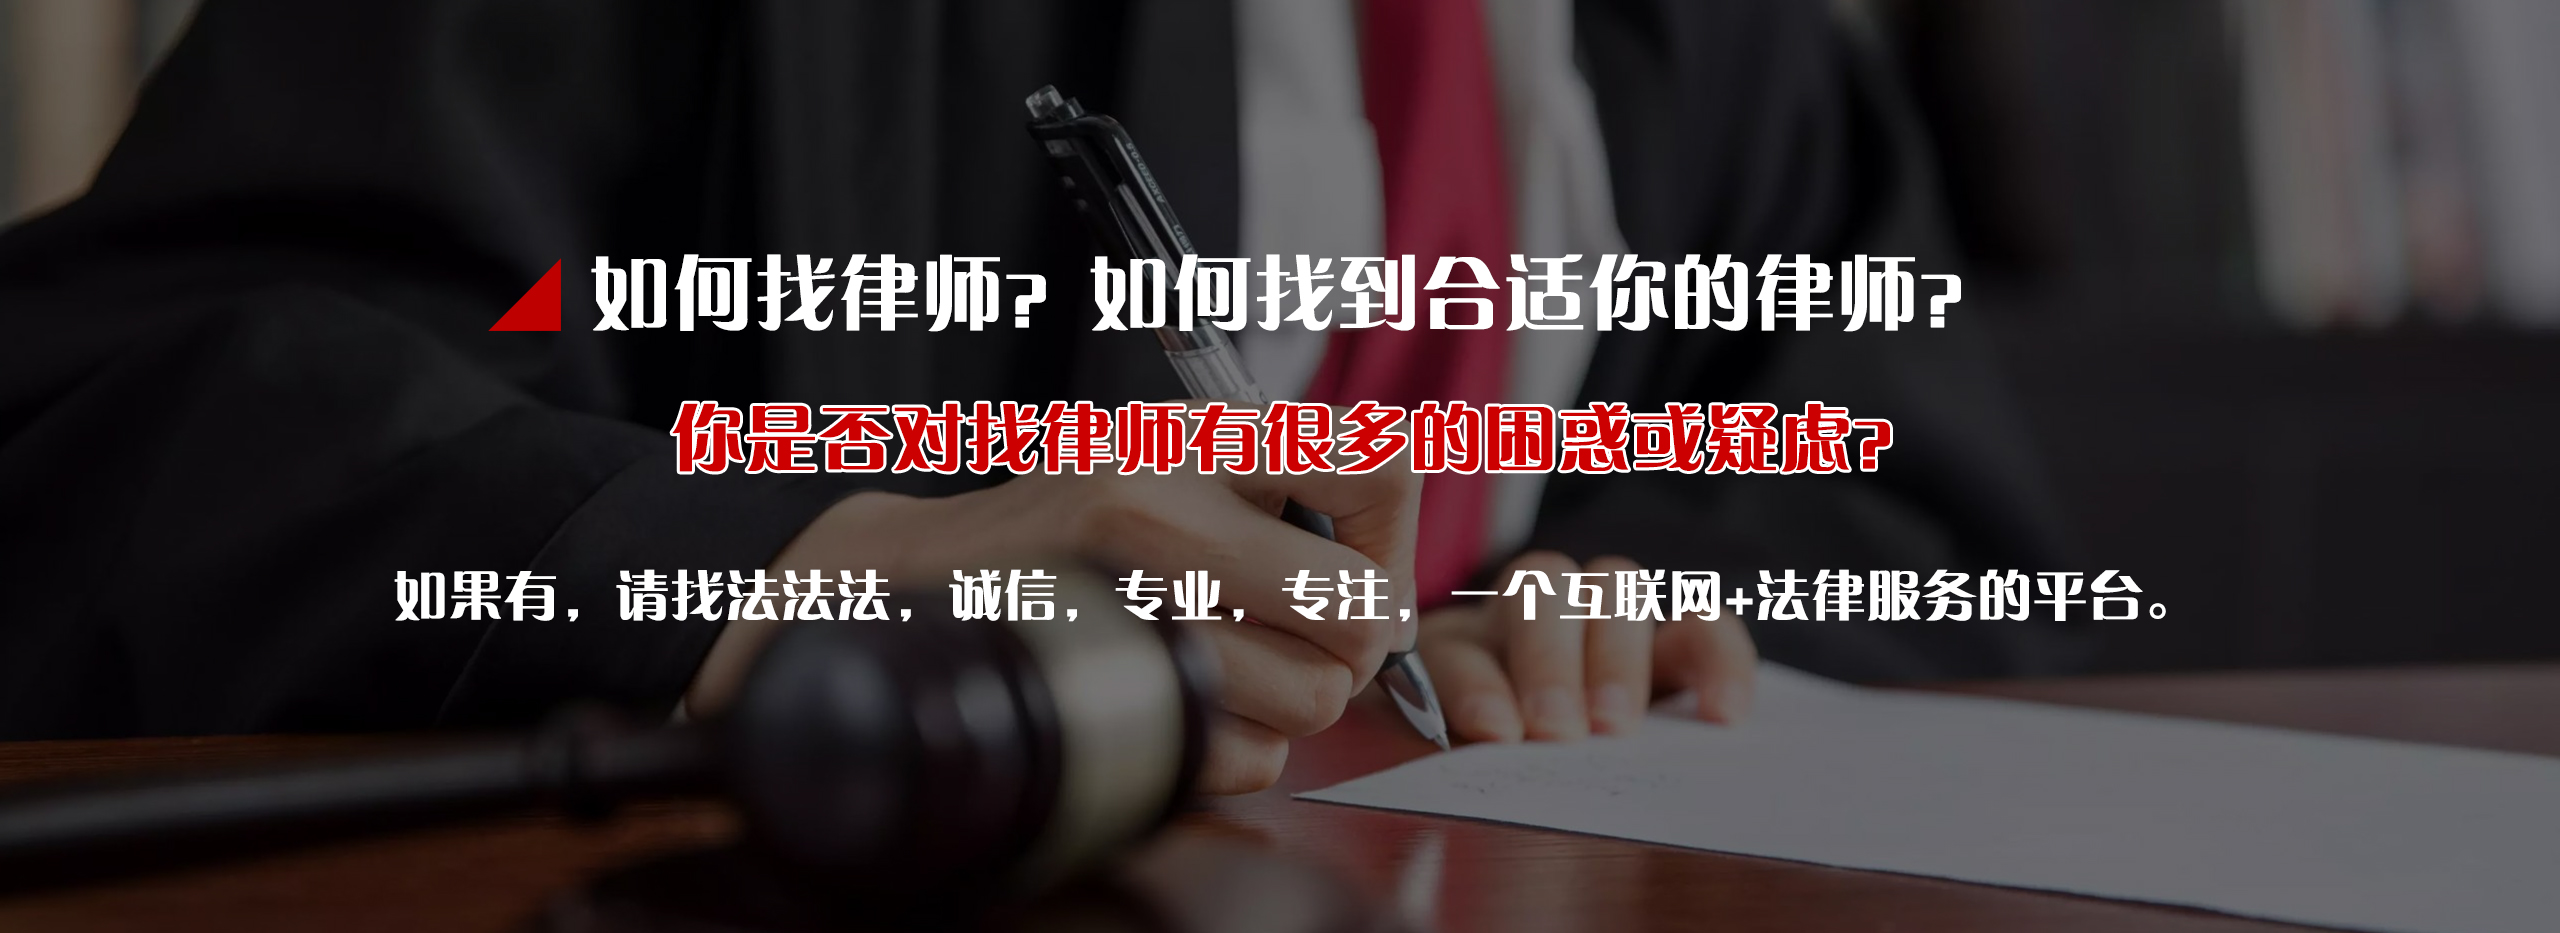 知识产权维权法律援助_优选法律服务-四川法法法信息科技有限公司